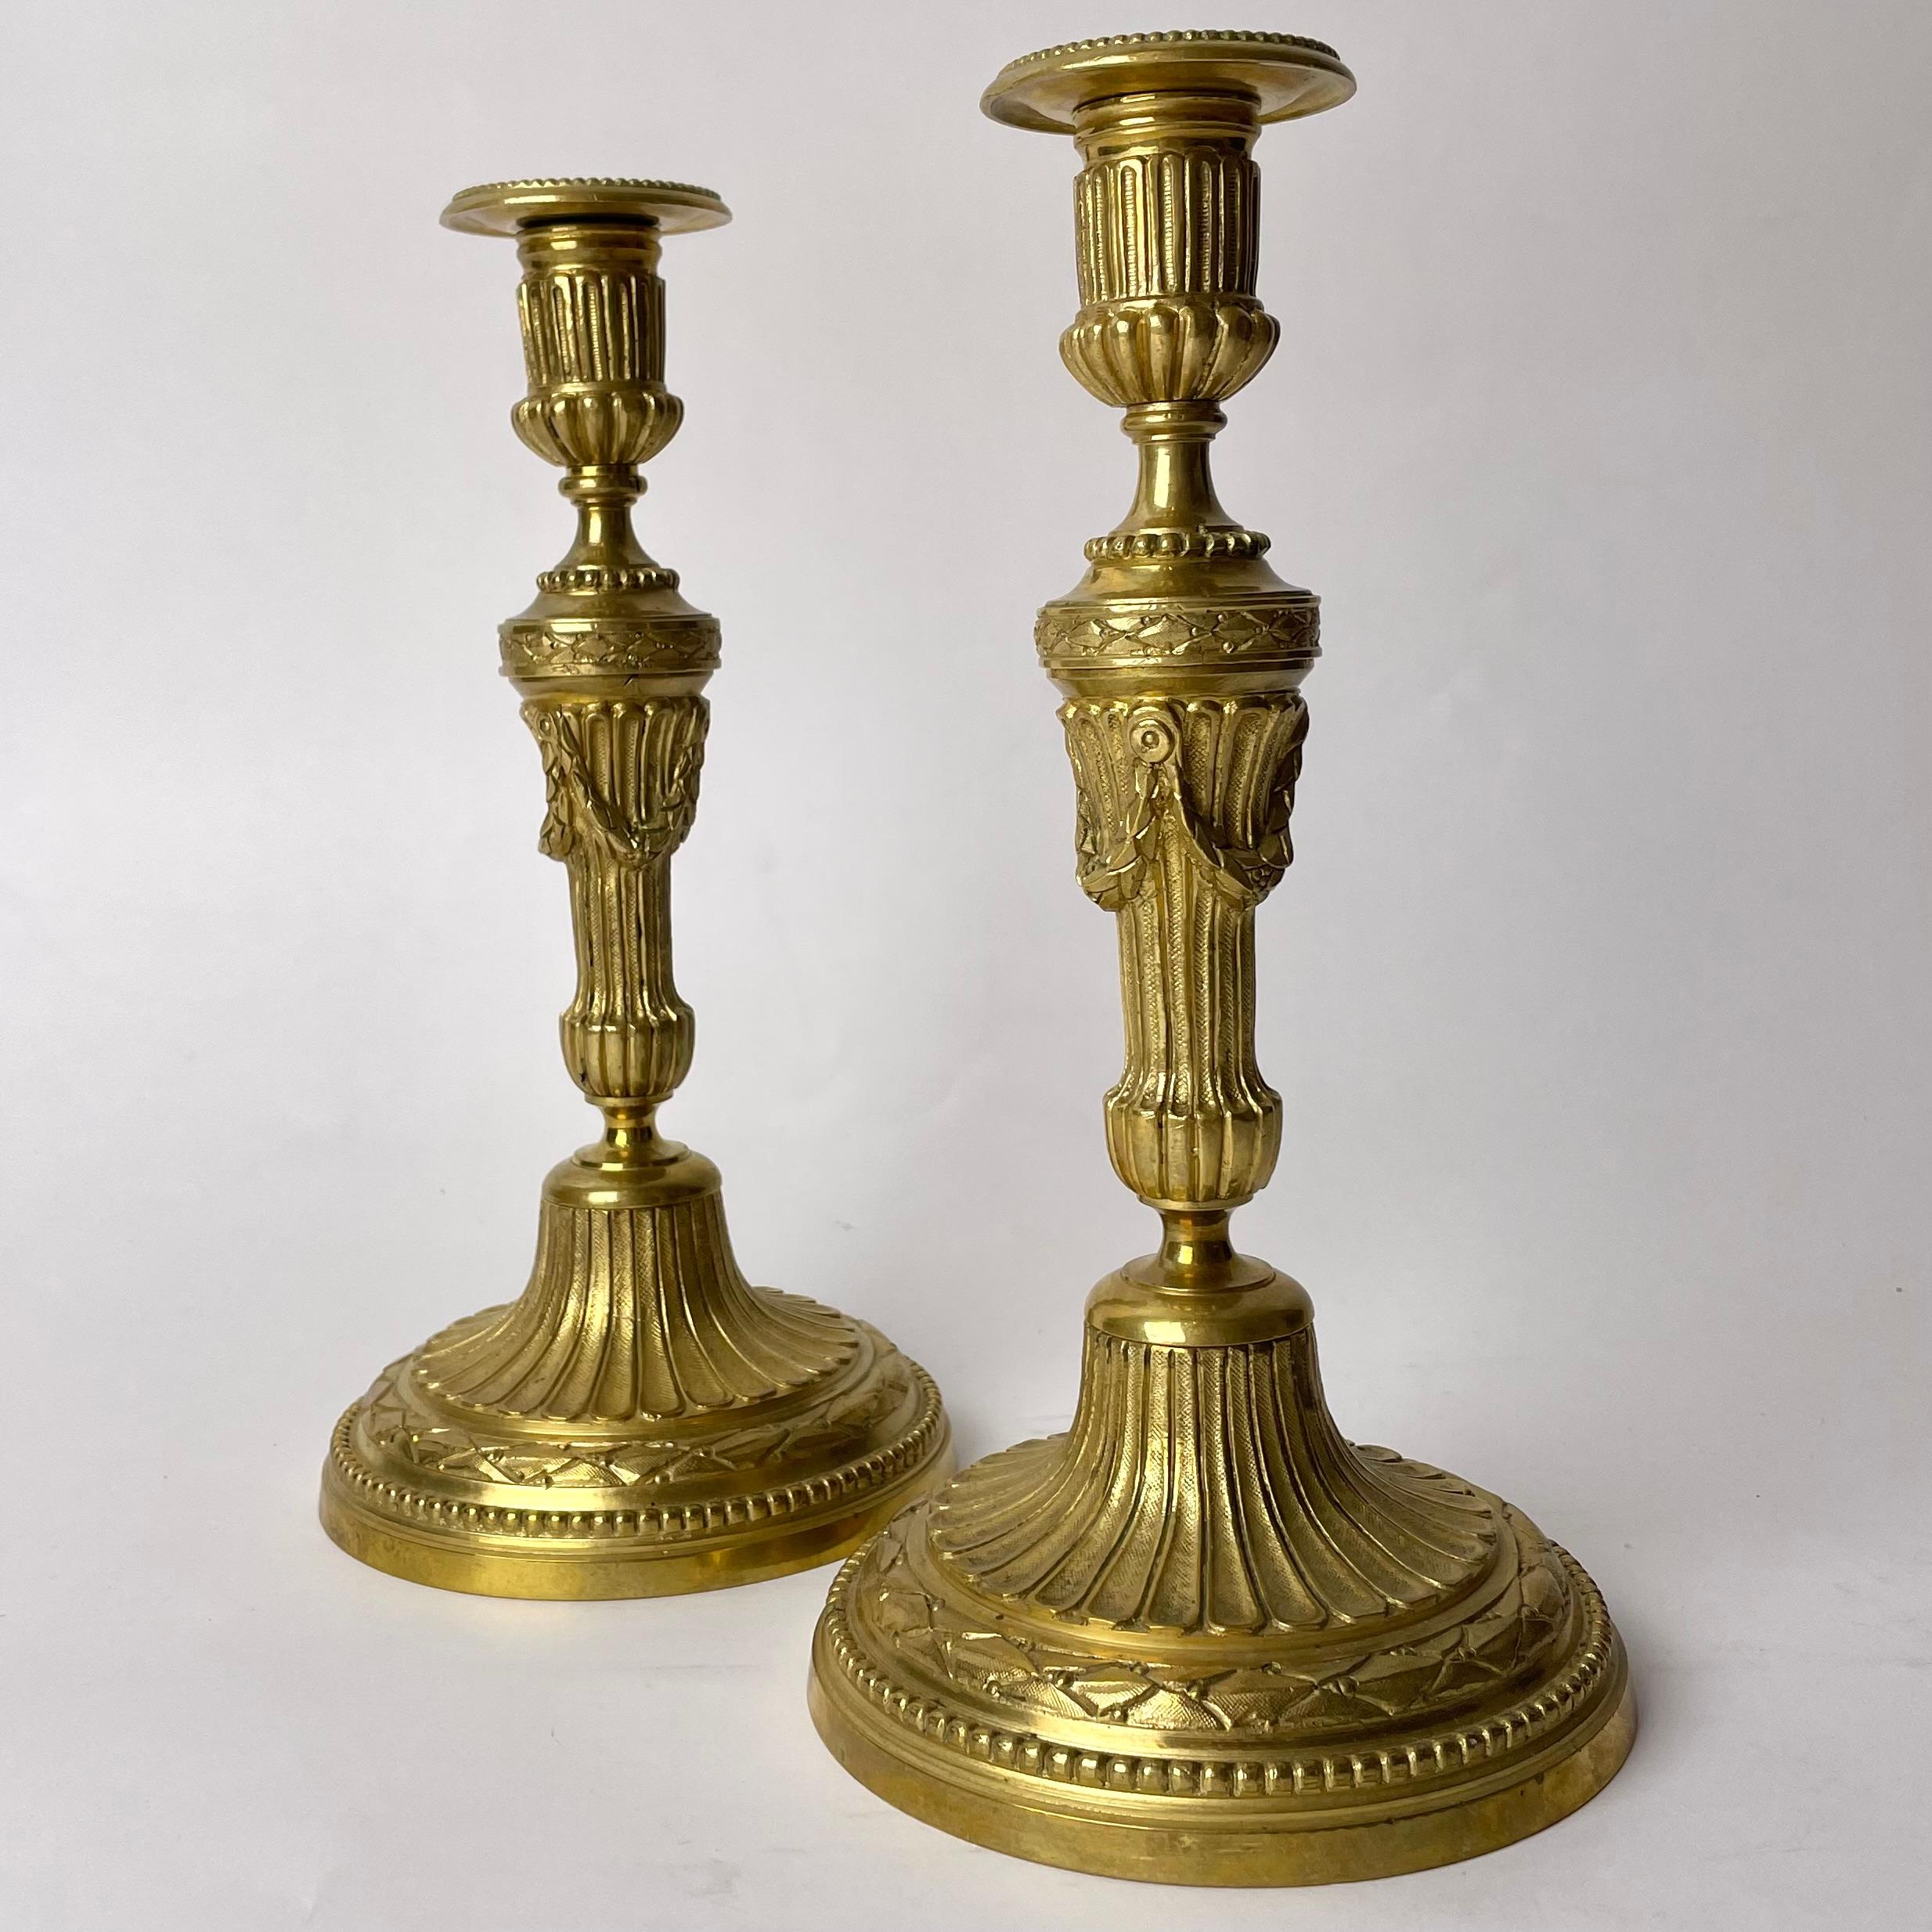 Ein Paar elegante und verzierte Kerzenständer aus vergoldeter Bronze aus dem 19. Im Stil von Ludwig XVI.

Dieses Paar vergoldeter Bronzekerzenhalter ist stark verziert im Stil Ludwigs XVI. und spiegelt die Wertschätzung für die eleganten Formen des